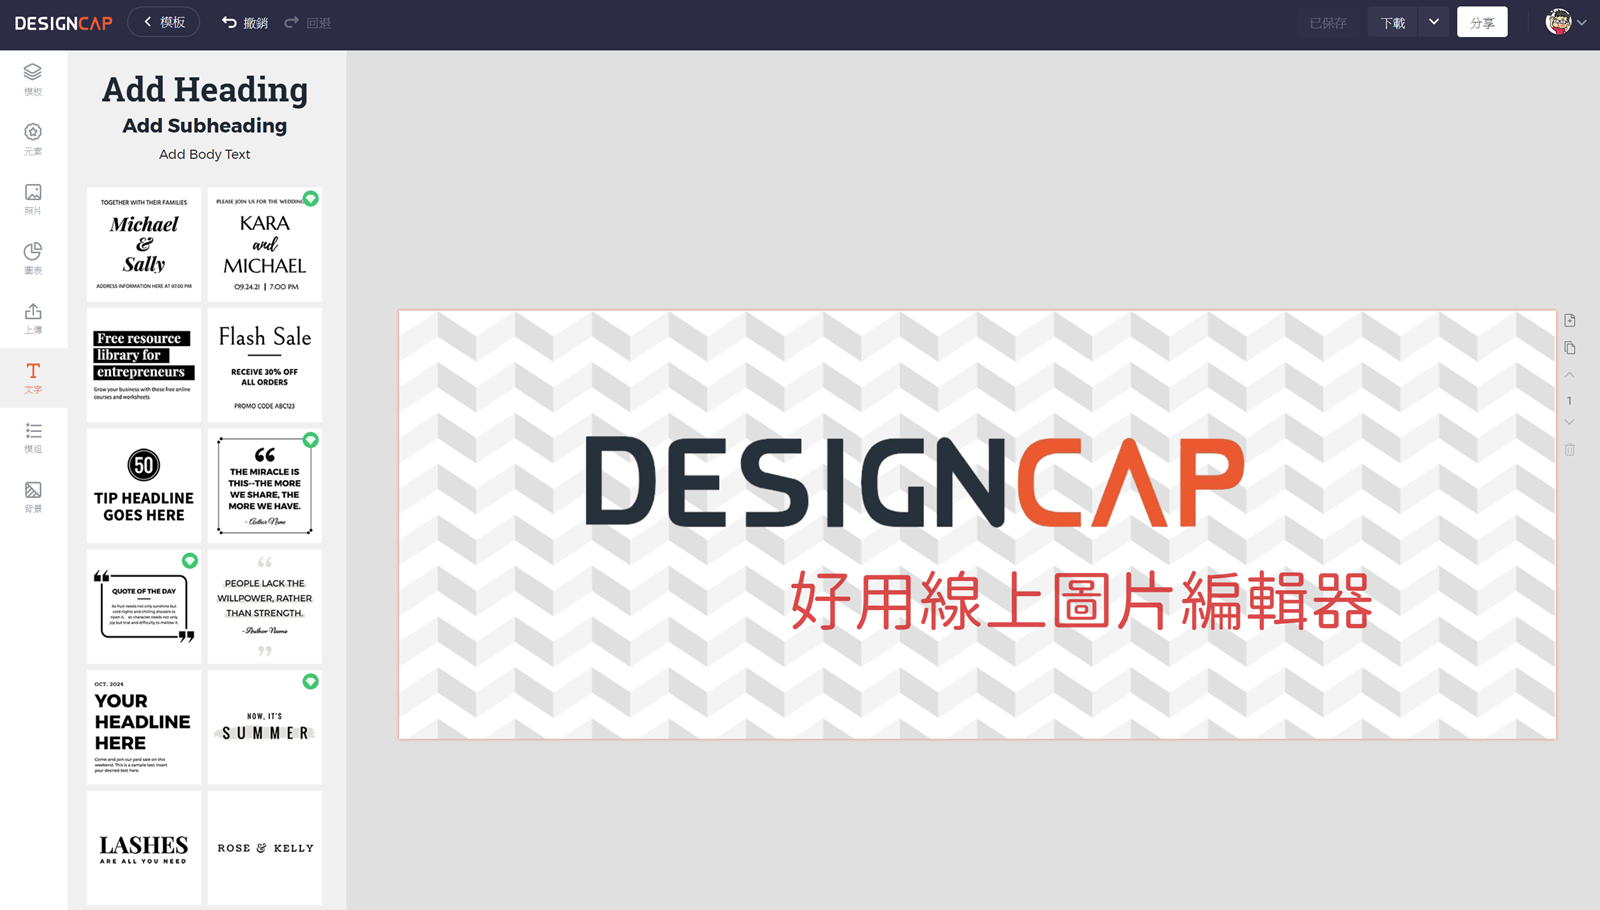 線上設計精緻圖片素材！DesignCap 免安裝點一點就完成！馬上註冊就可以免費開始使用！ @3C 達人廖阿輝